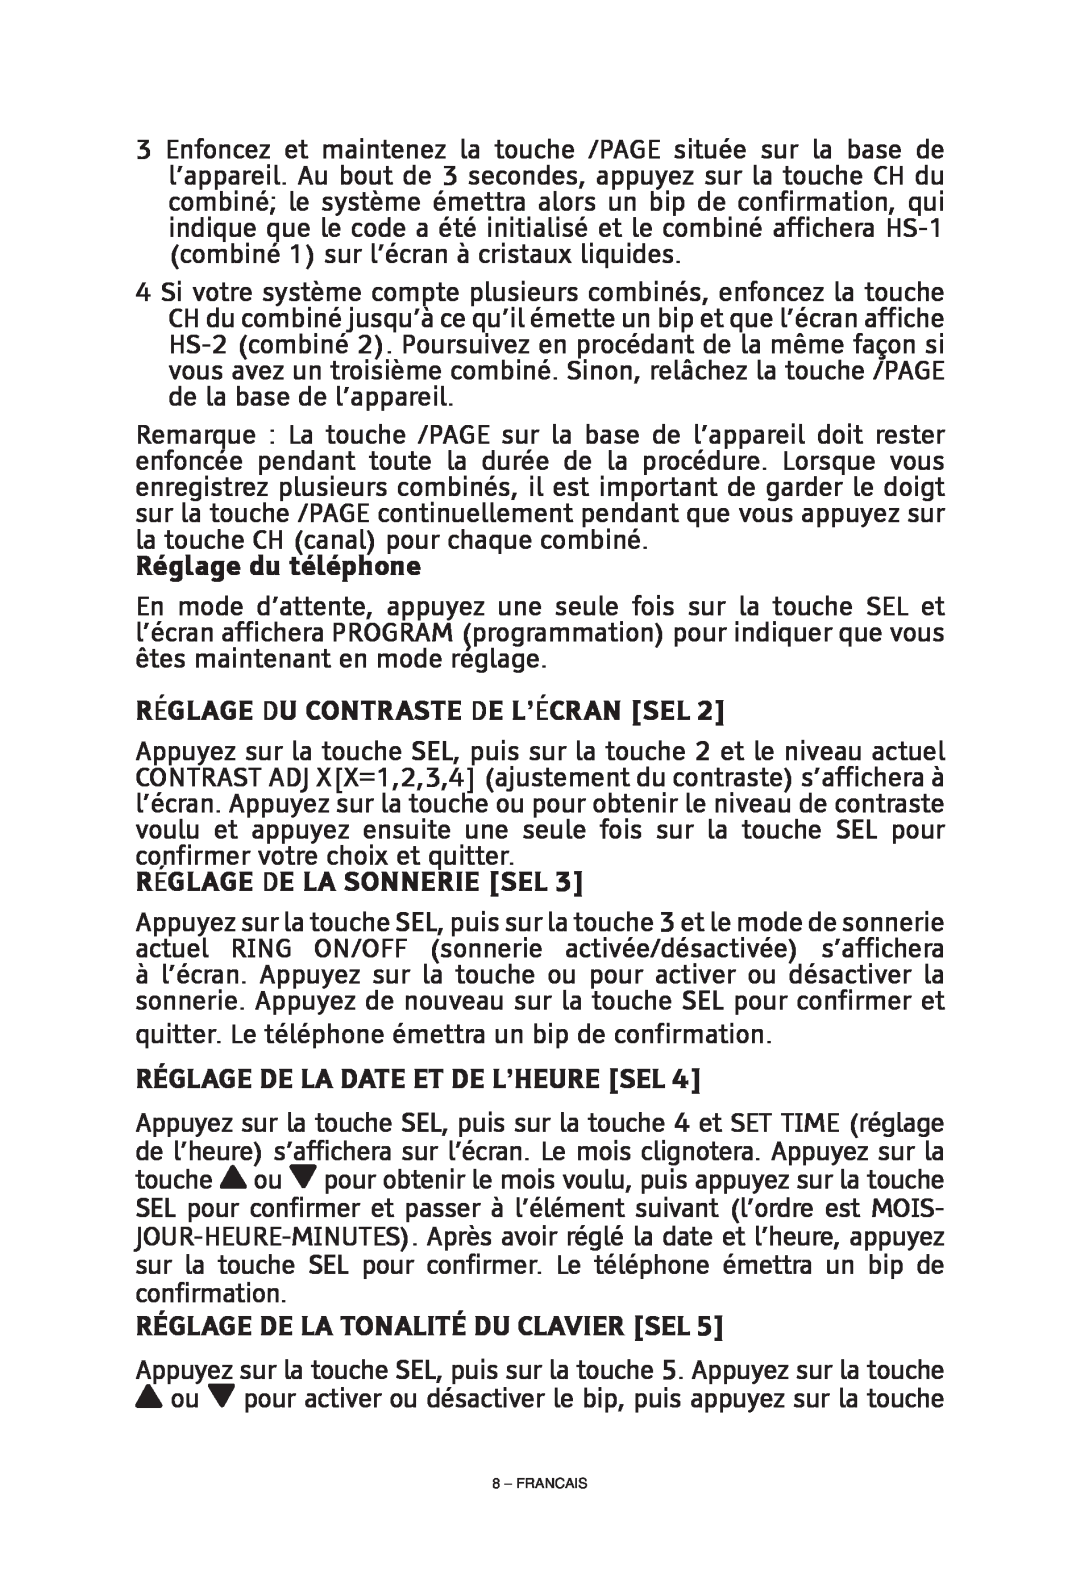 ClearSounds CS-A55 manual Réglage De La Date Et De L’Heure Sel, Réglage De La Tonalité Du Clavier Sel, Réglage du téléphone 